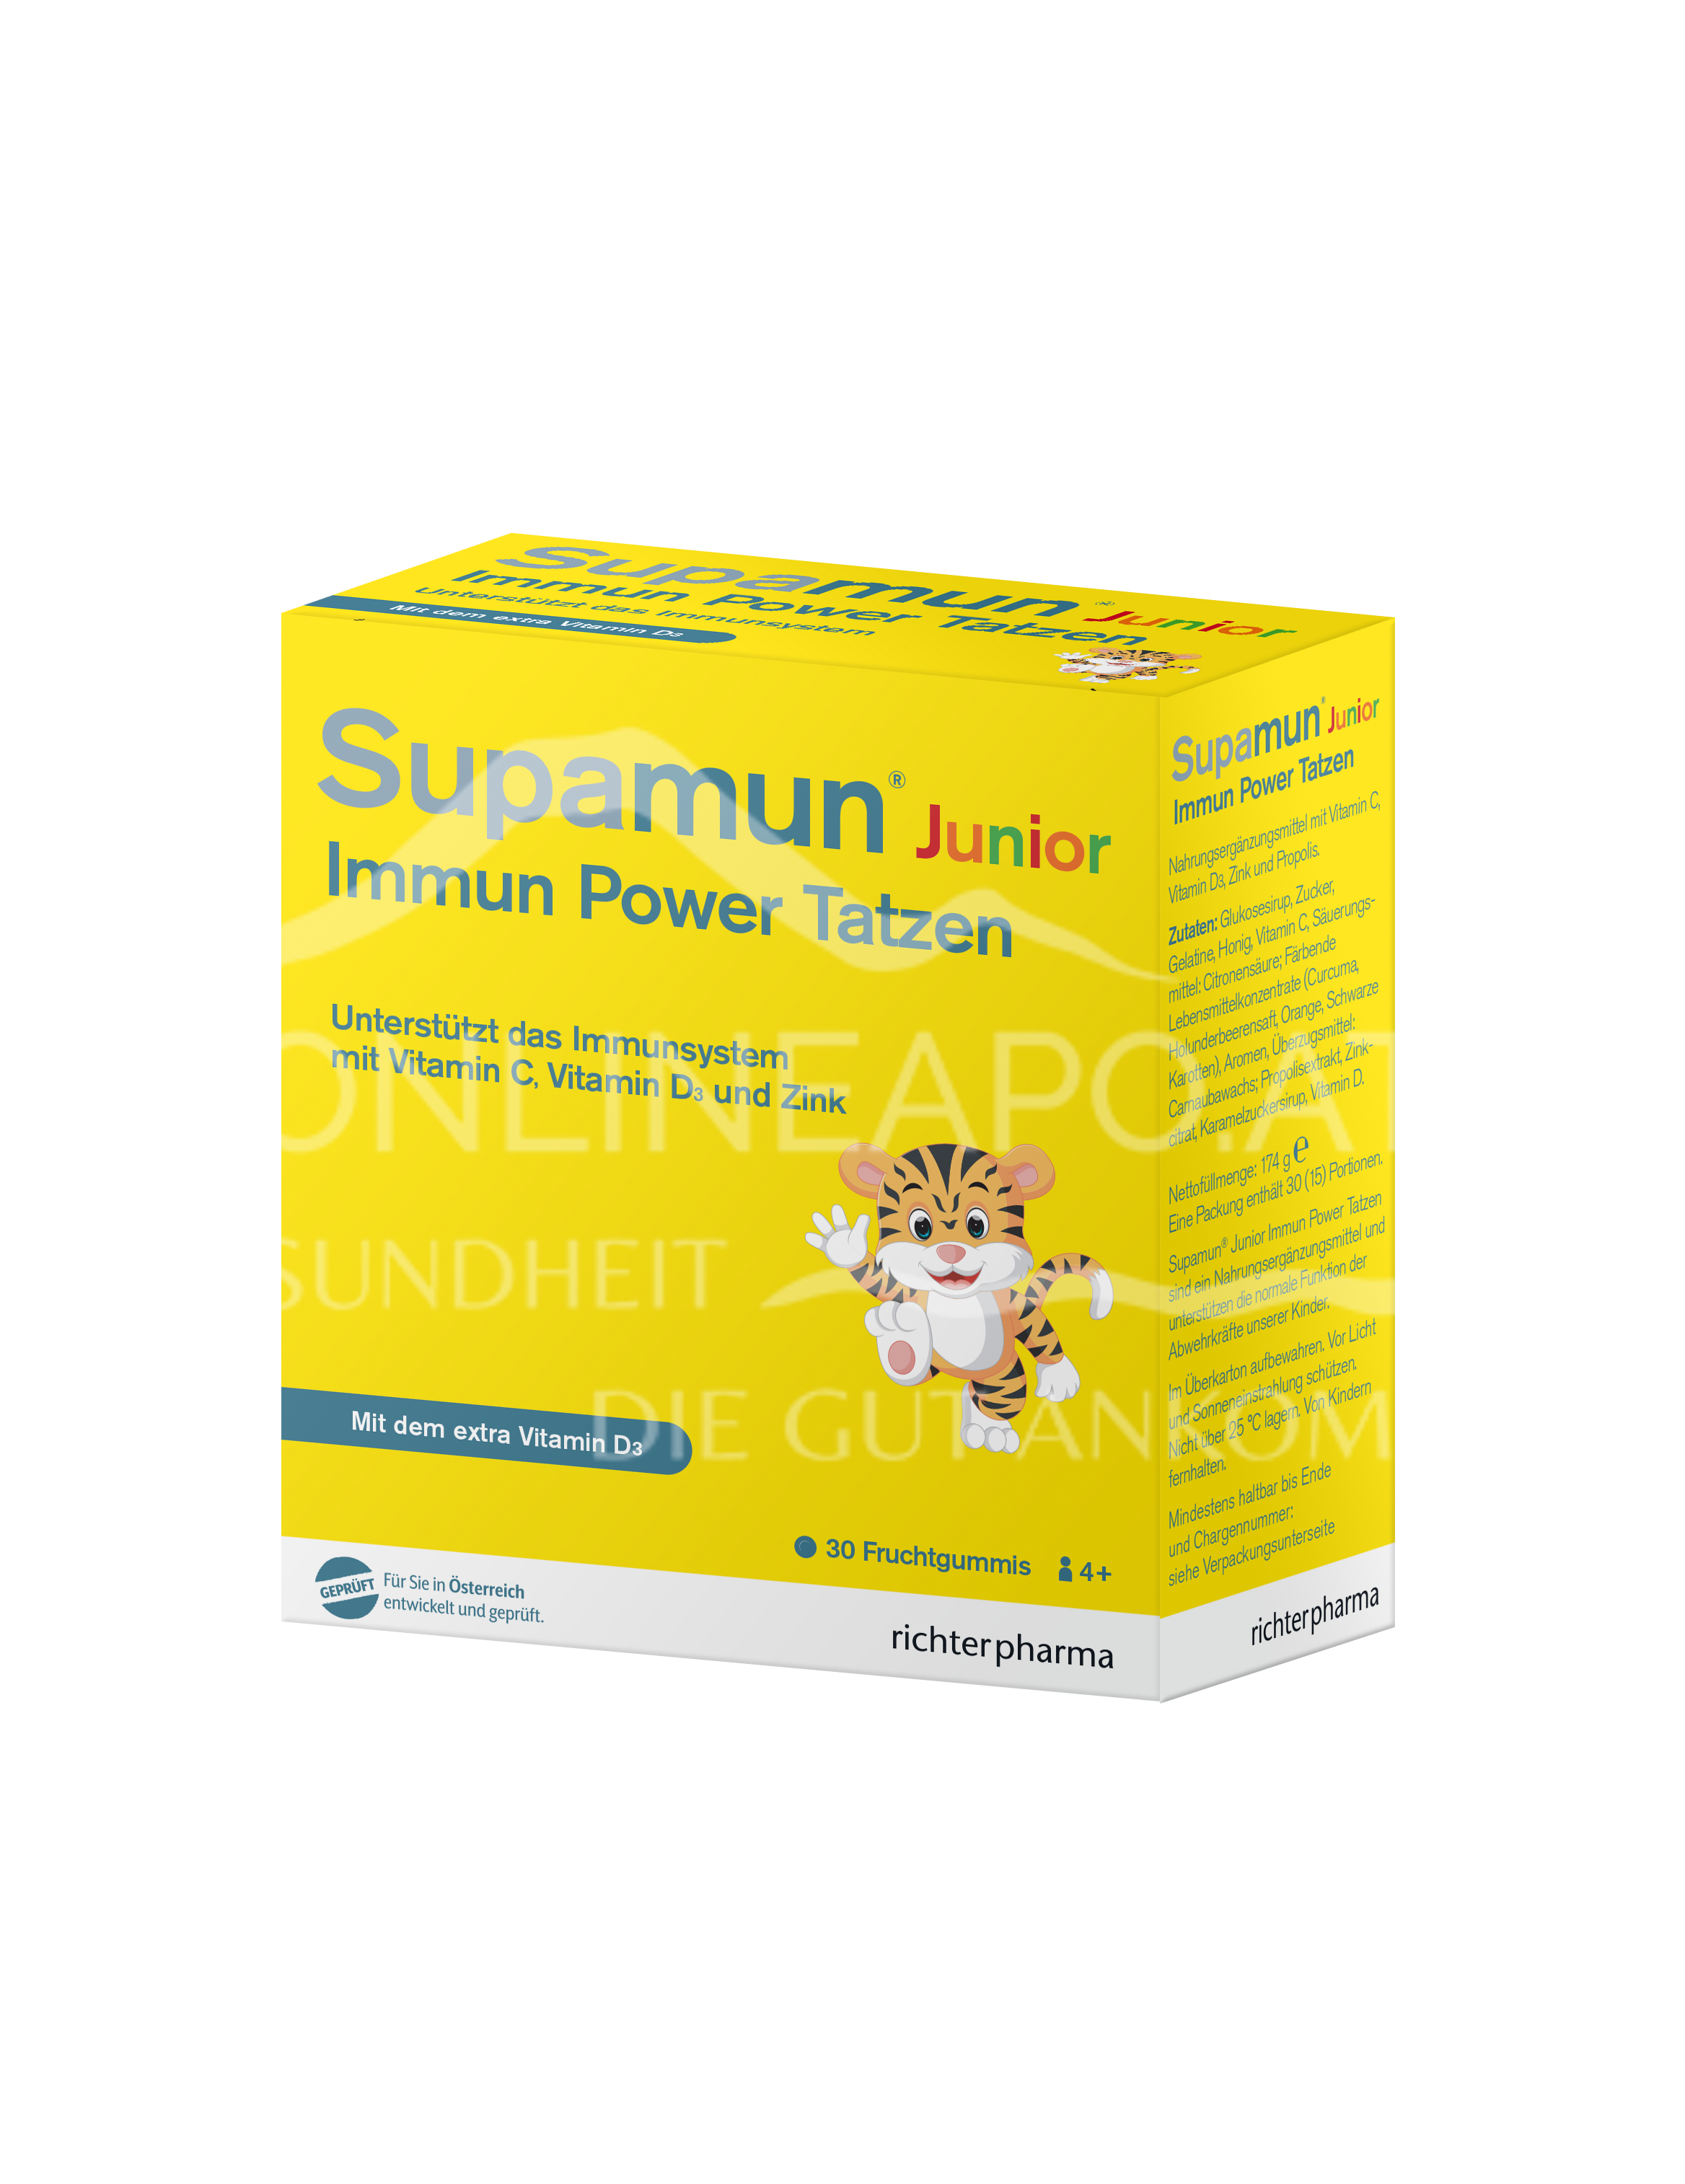 Supamun® Immun Junior Power Tatzen